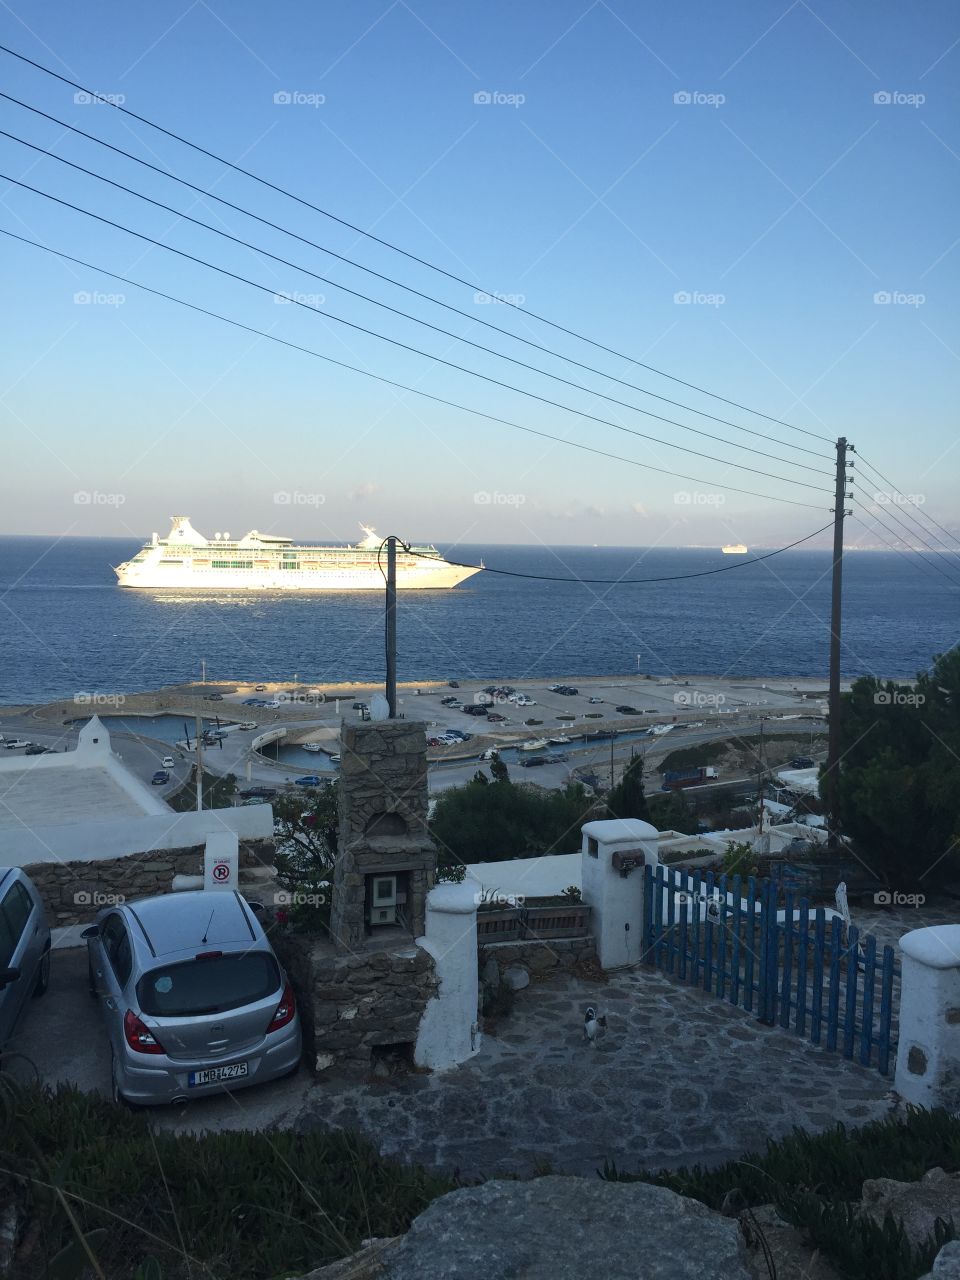 Cruise ship entering the mykonos harbor